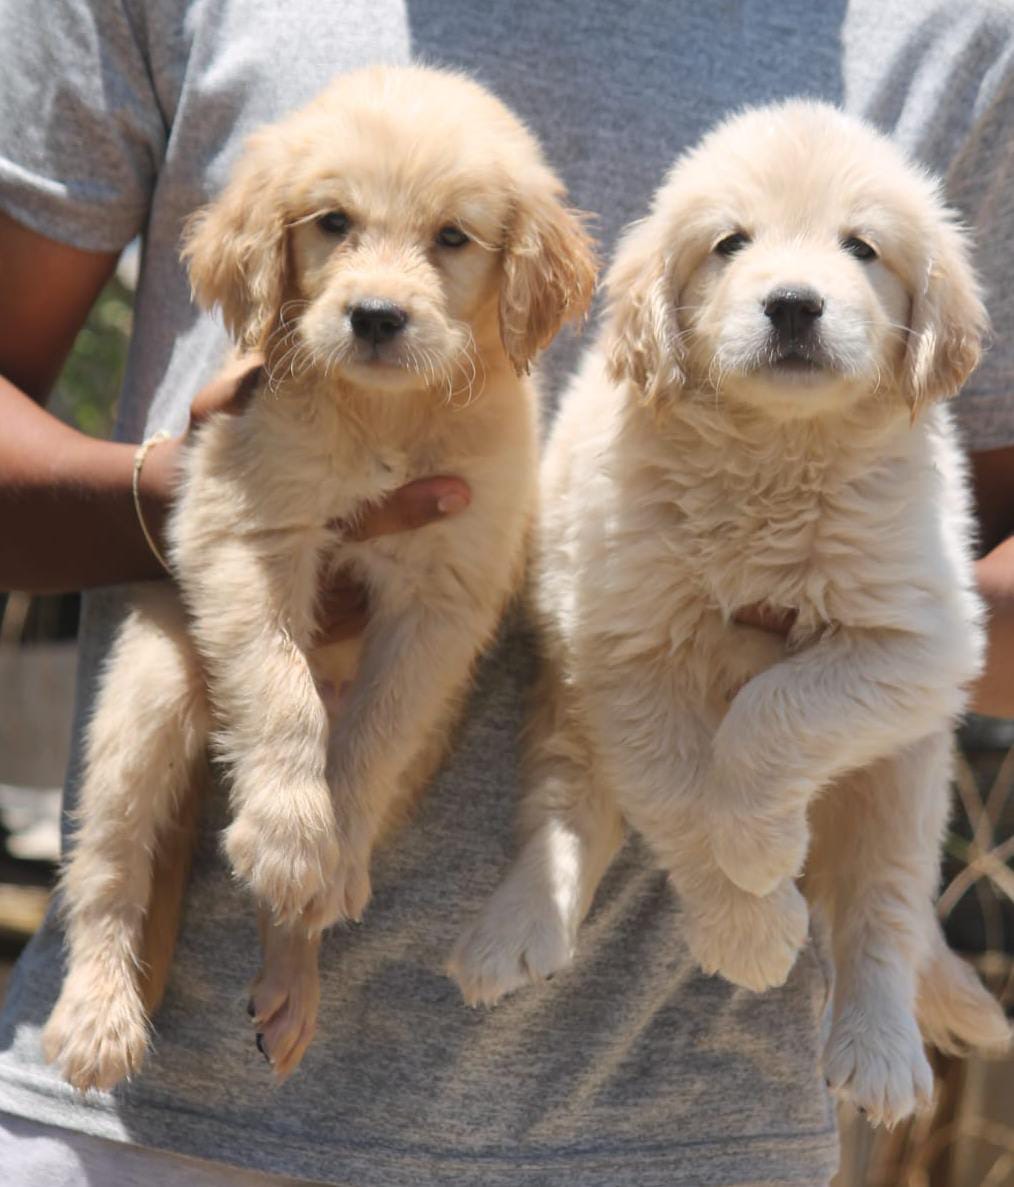 Double bonned puppys